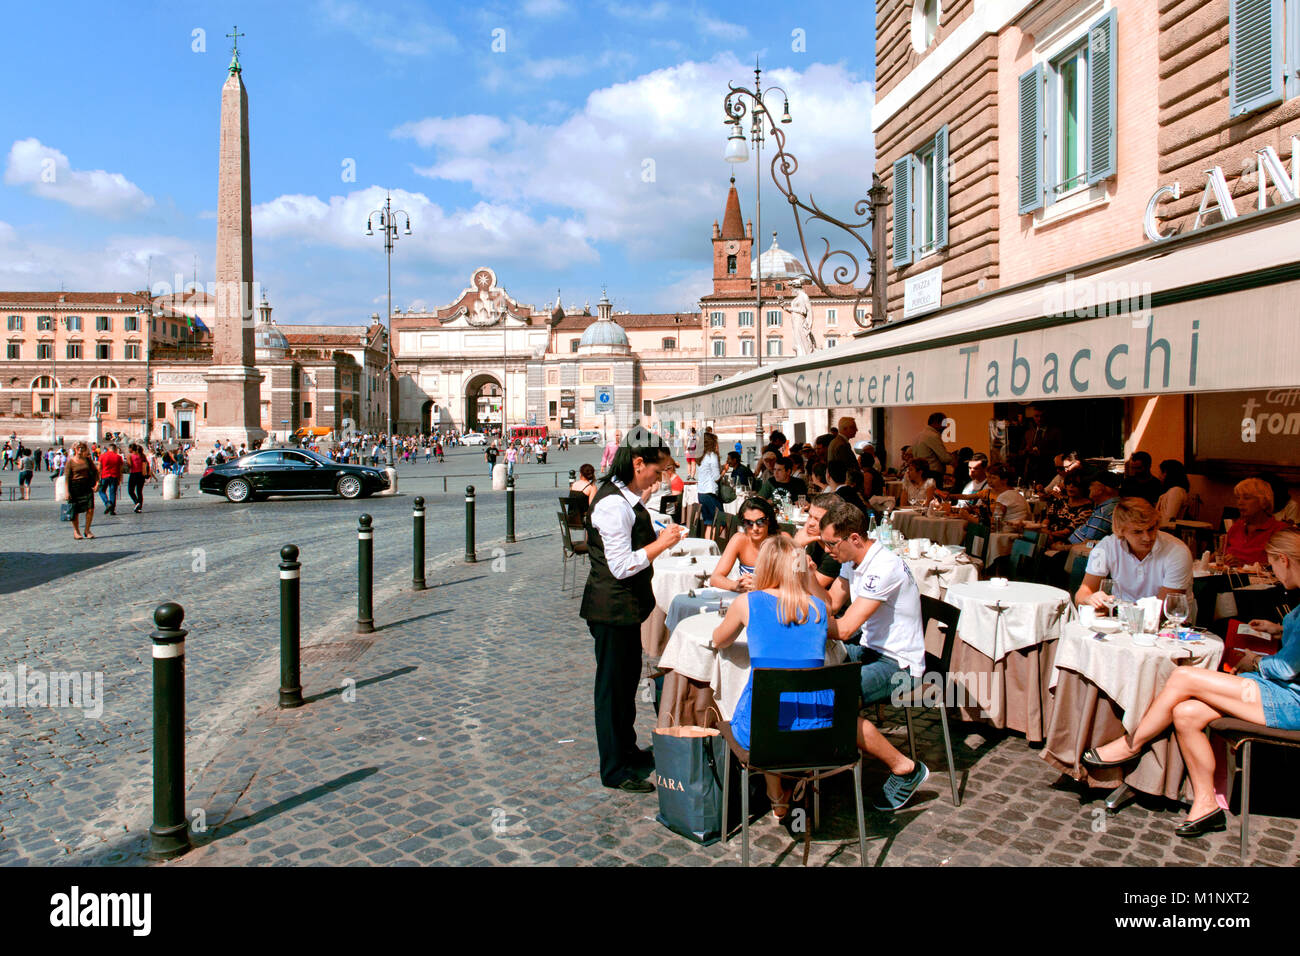 Bar Canova at Piazza del Popolo Square, Rome, Italy Stock Photo